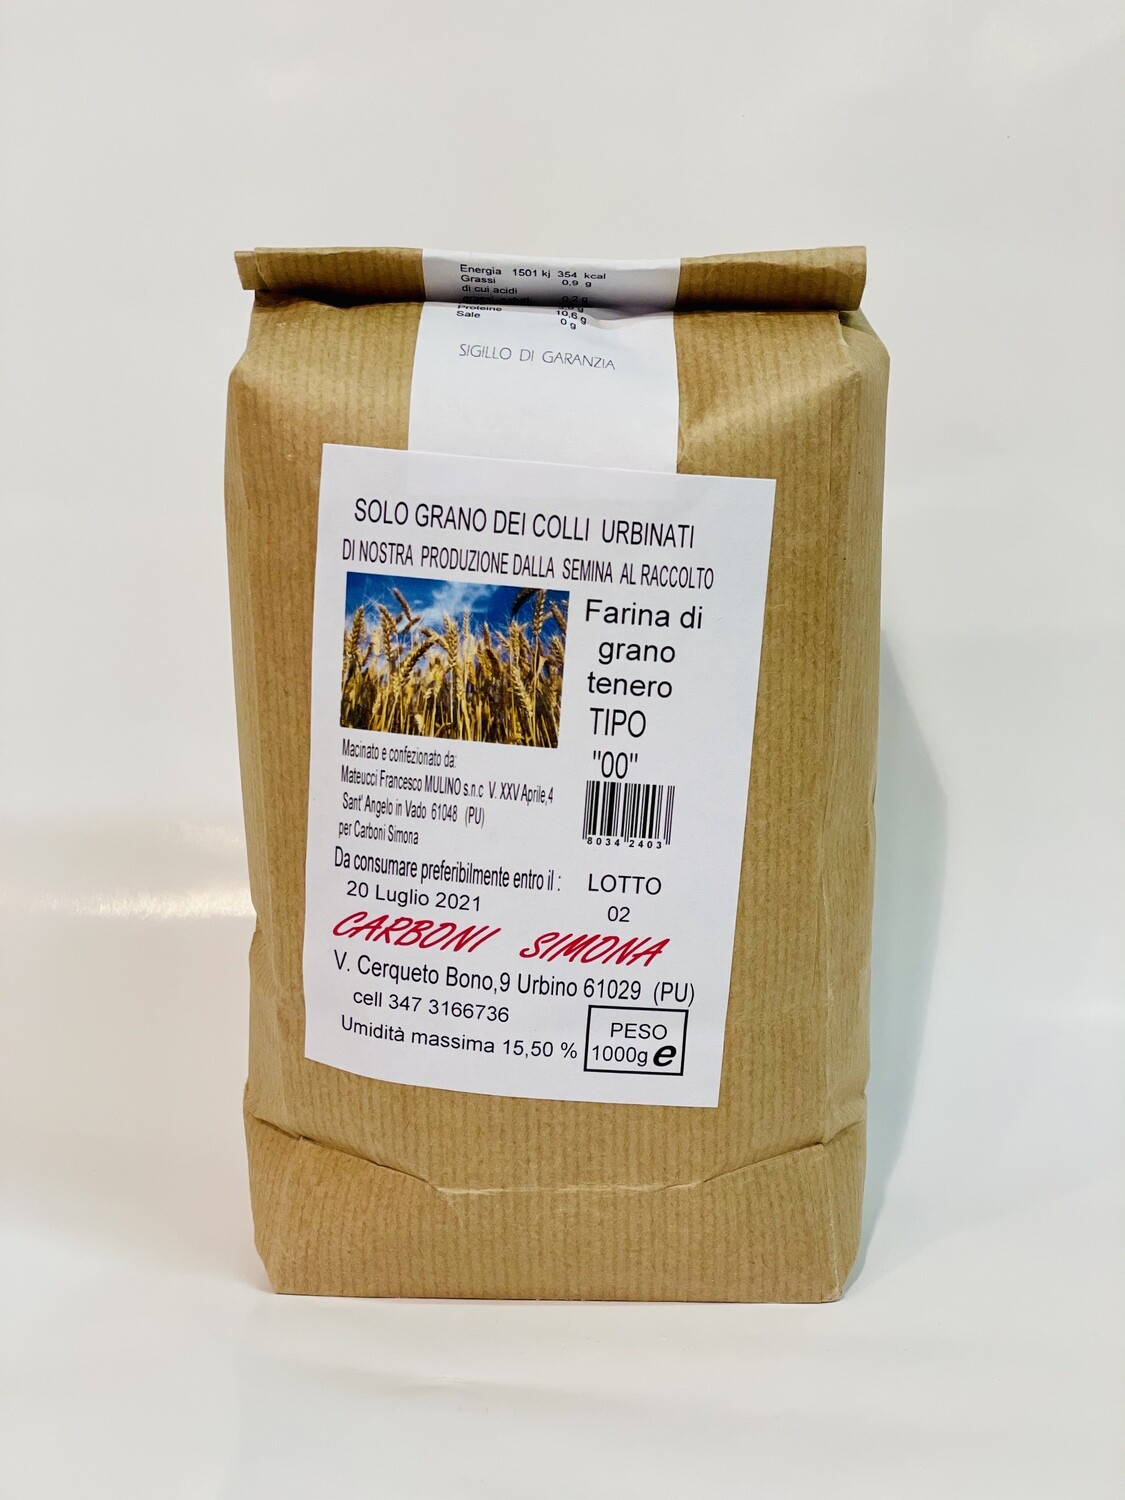 Farina di grano tenero TIPO "00" CARBONI SIMONA 1 kg